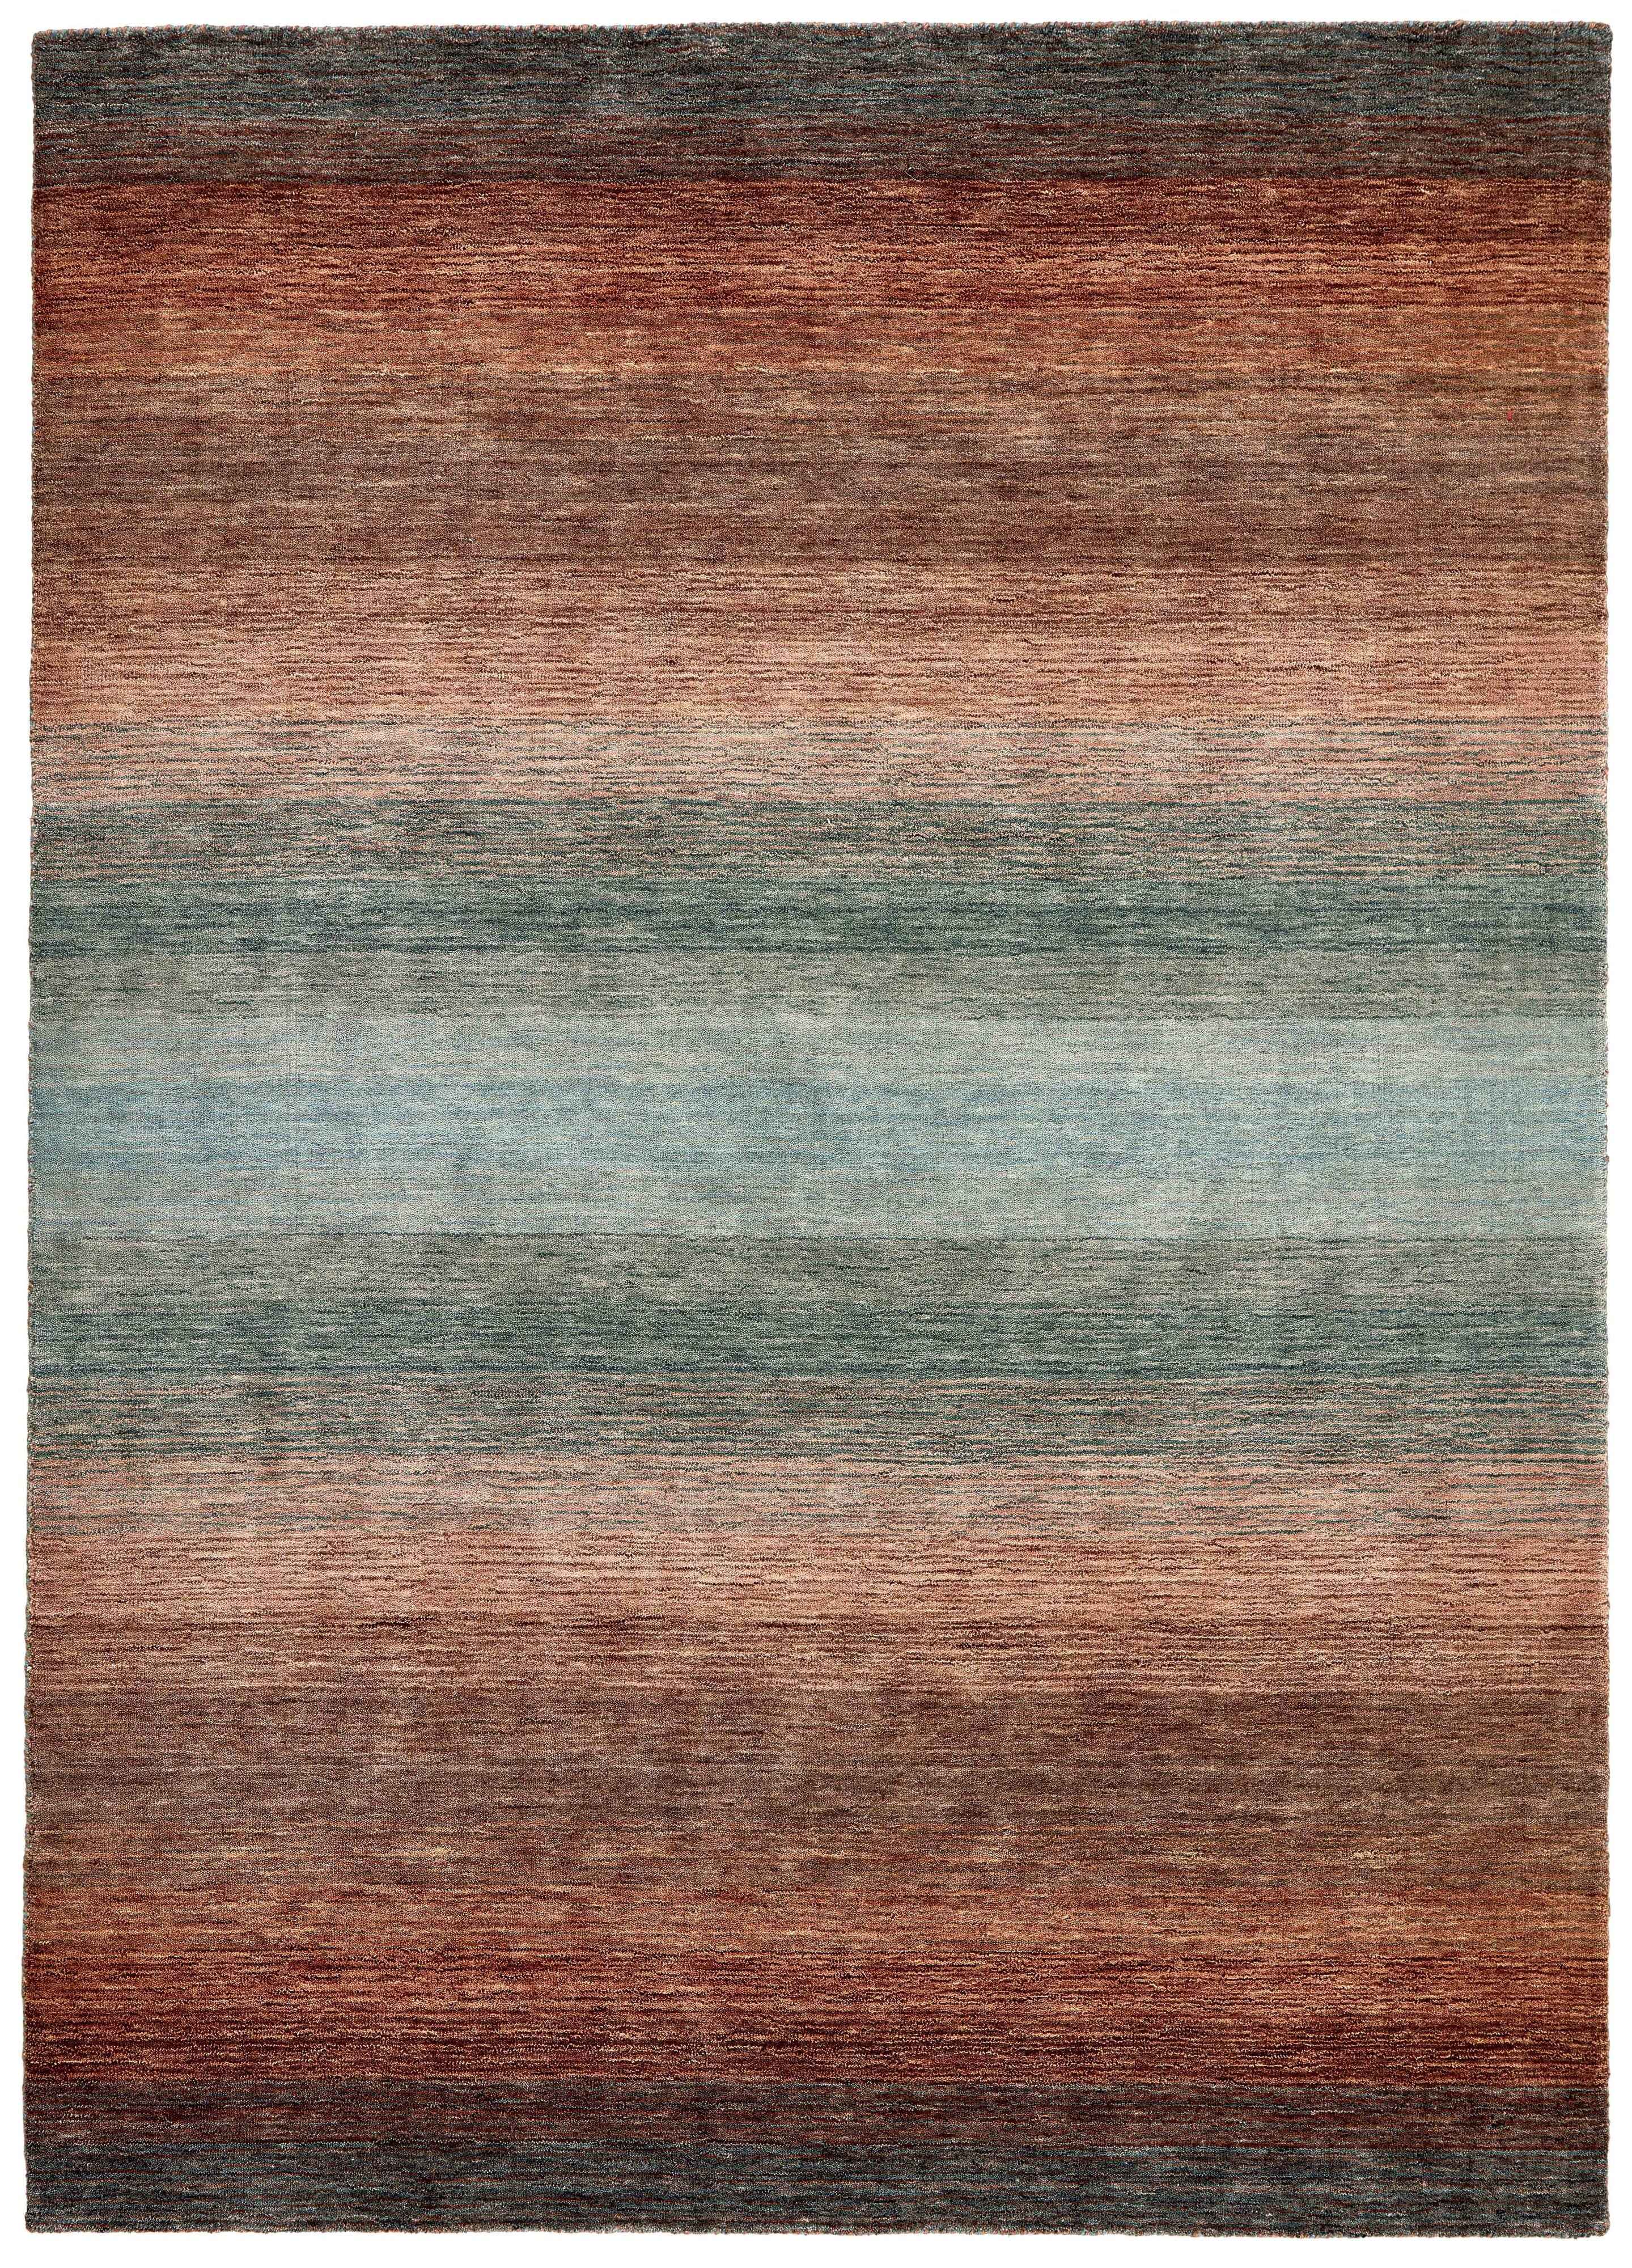 300x250 cm  Indian Wool Blue Rug-HLC200111, Dark Brown Multi